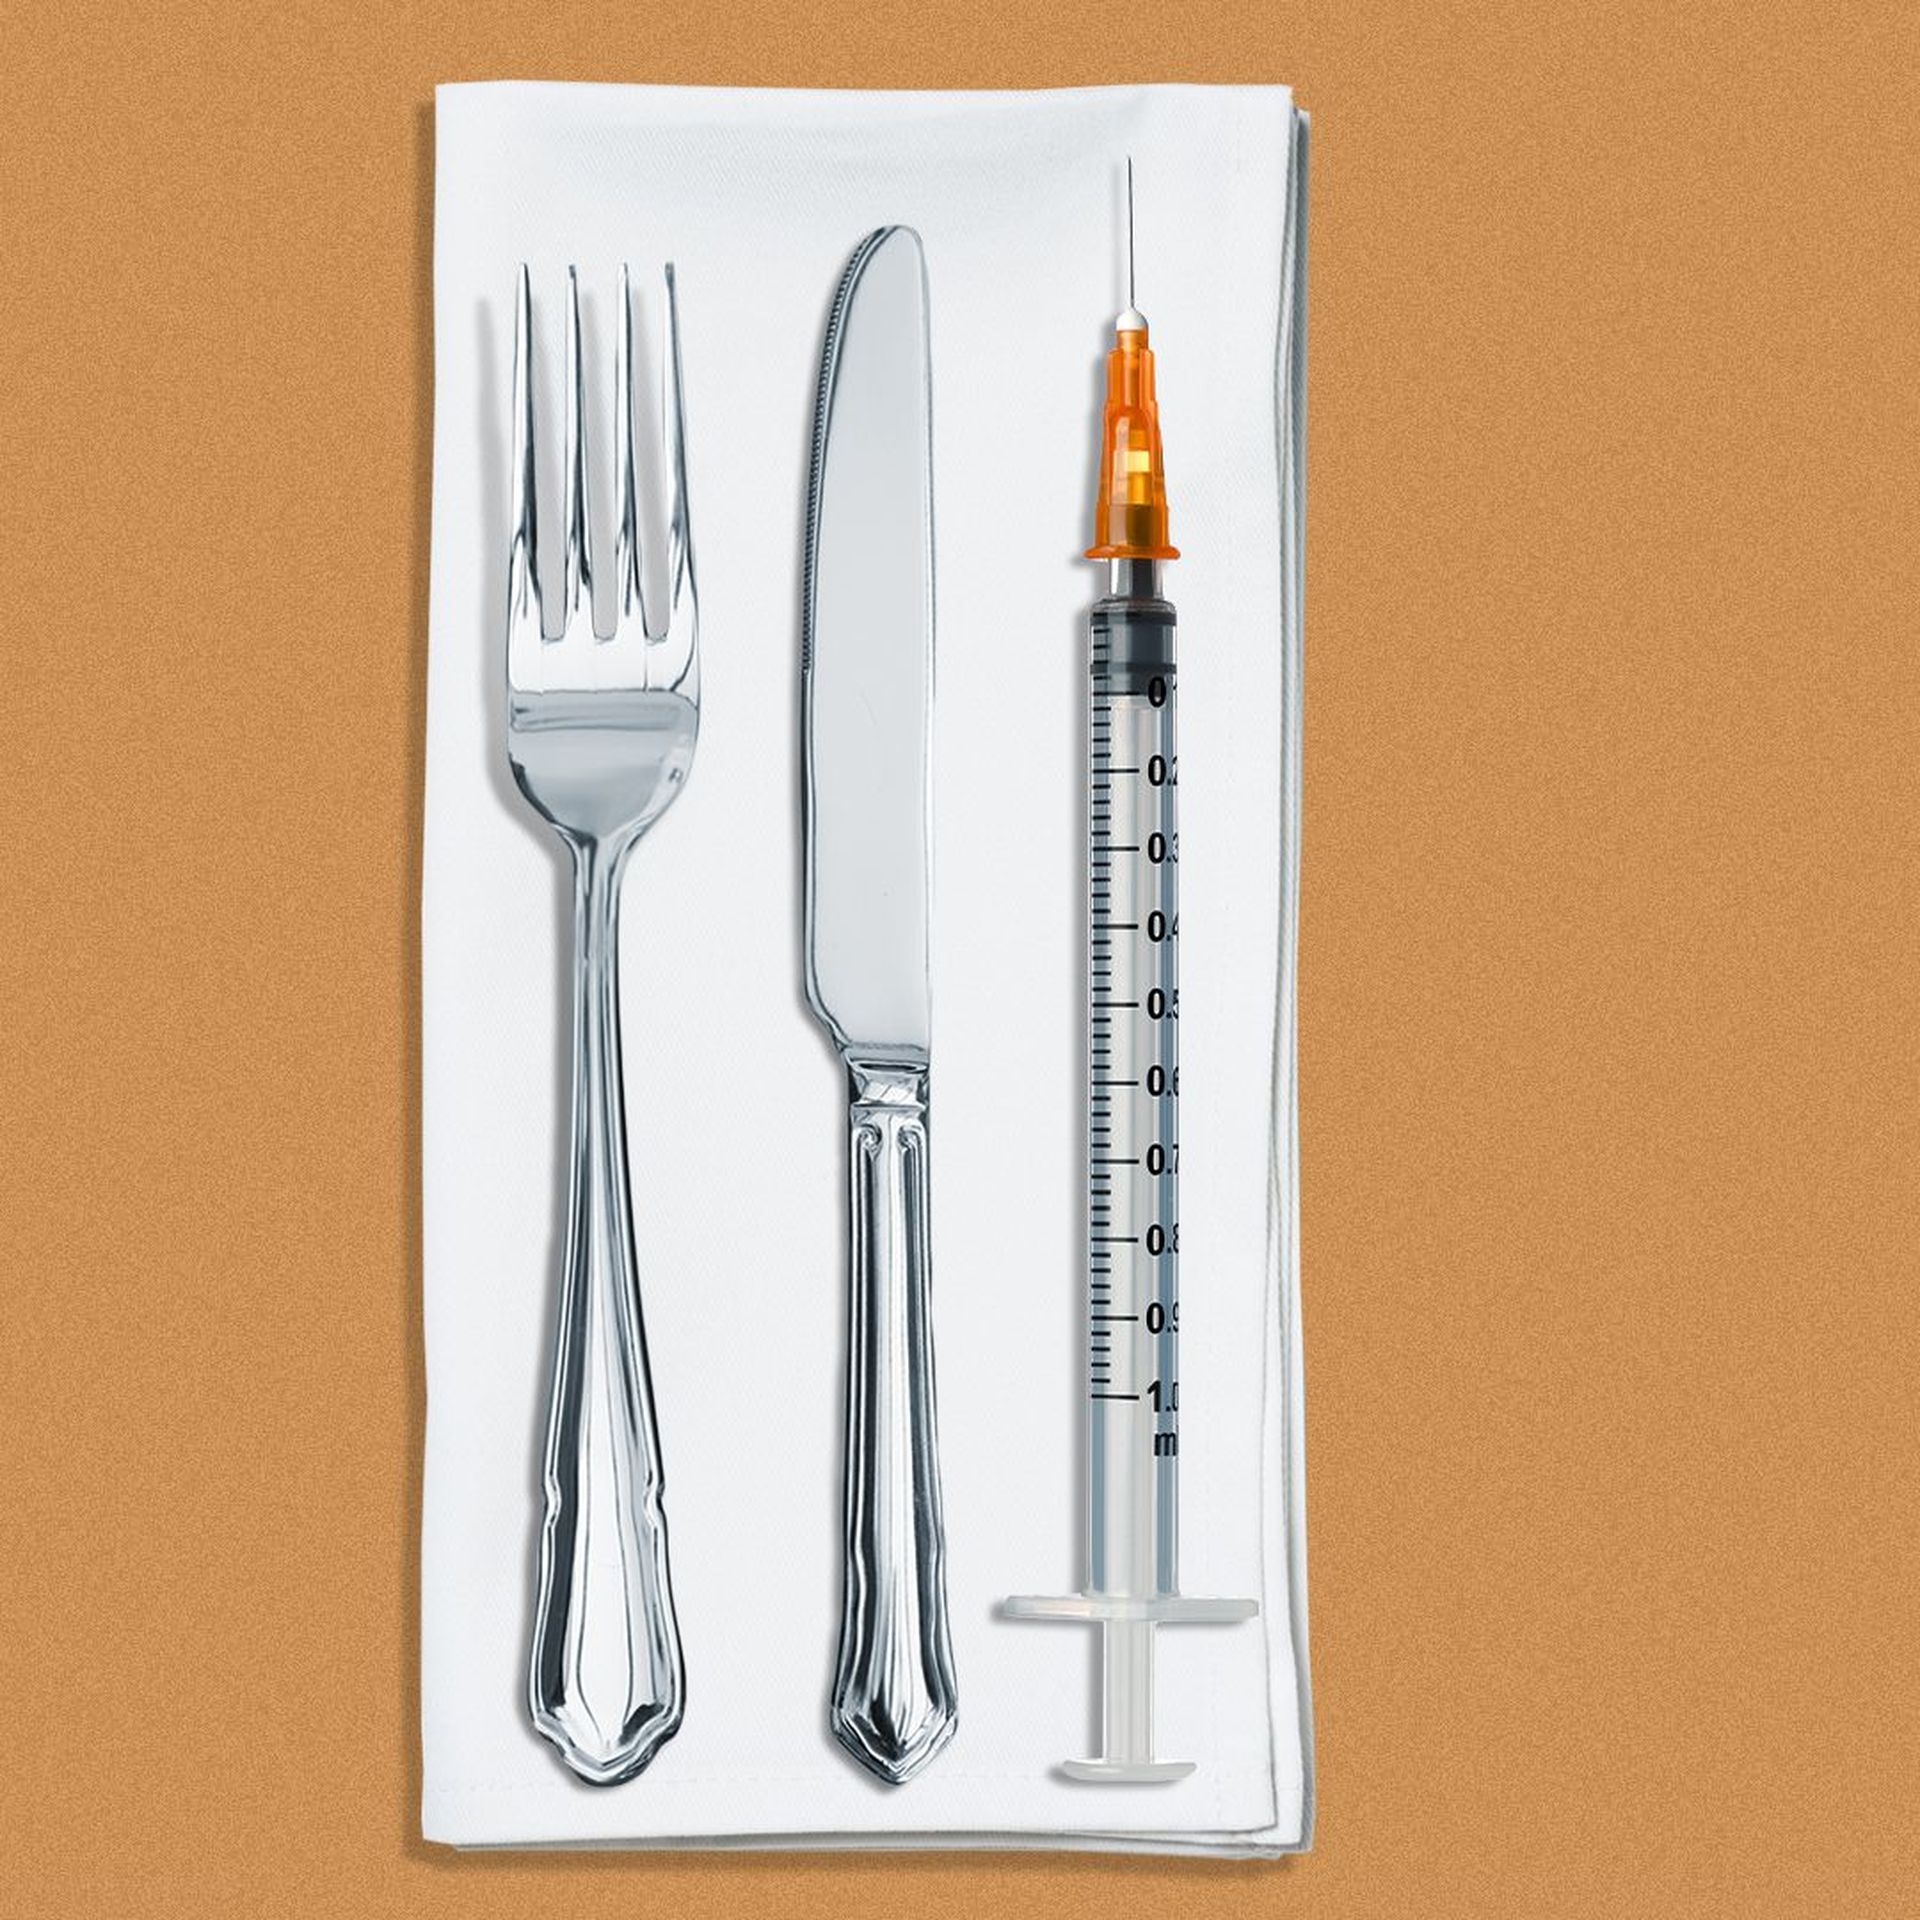 Illustration of a fork, knife and syringe on a napkin.